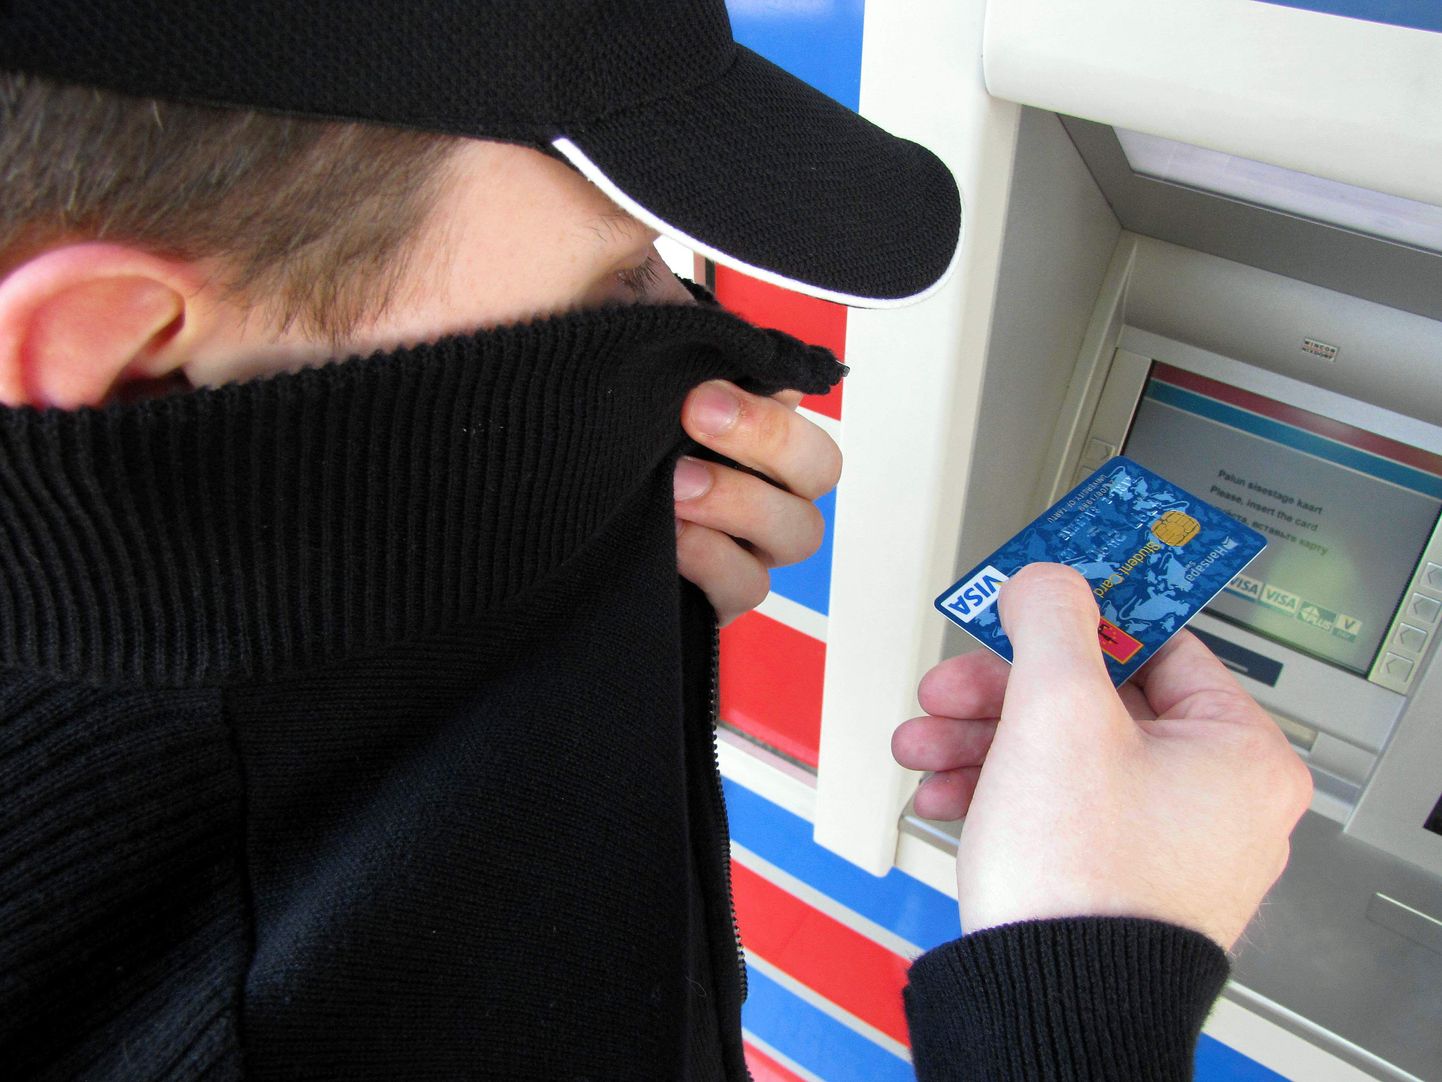 Иллюстративный кадр. Вор пытается воспользоваться в банкомате чужой банковской картой.